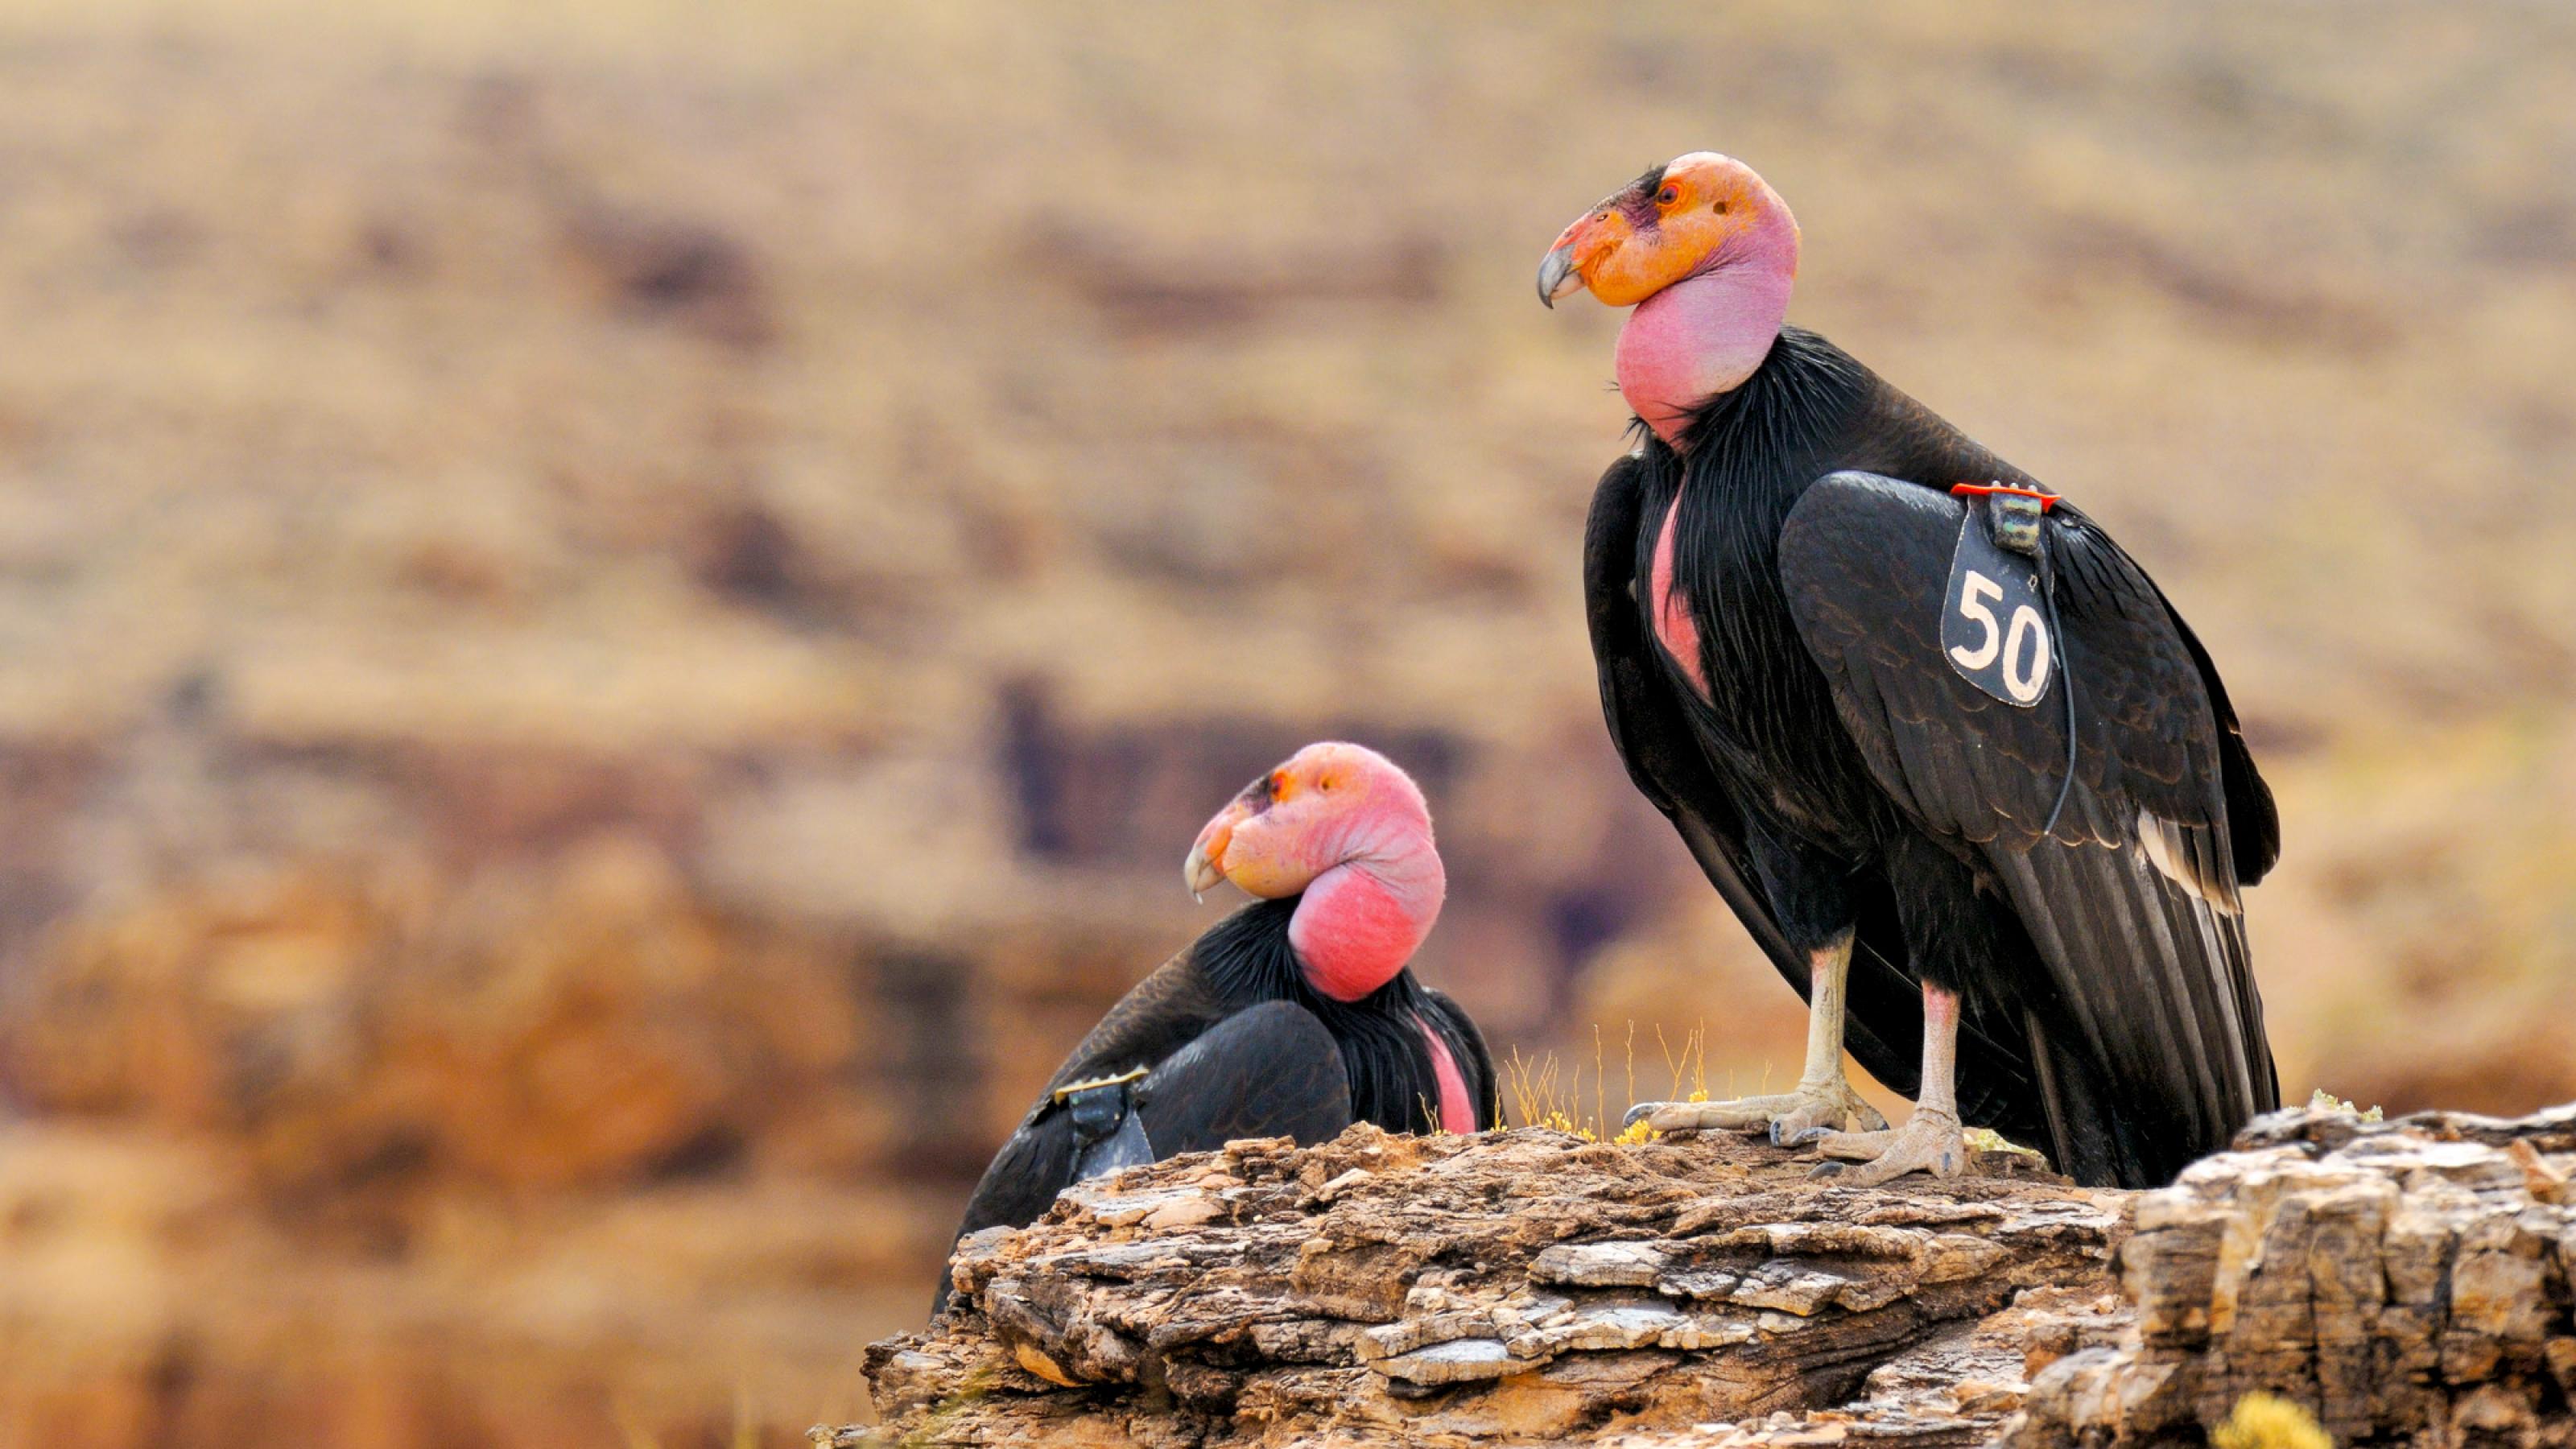 Zwei Vögel sitzen auf einem Felsen. Ihre roten Köpfe sind kahl, das Gefieder schwarz. An einem Flügel ist ein Schild mit der Zahl 50 zu sehen.